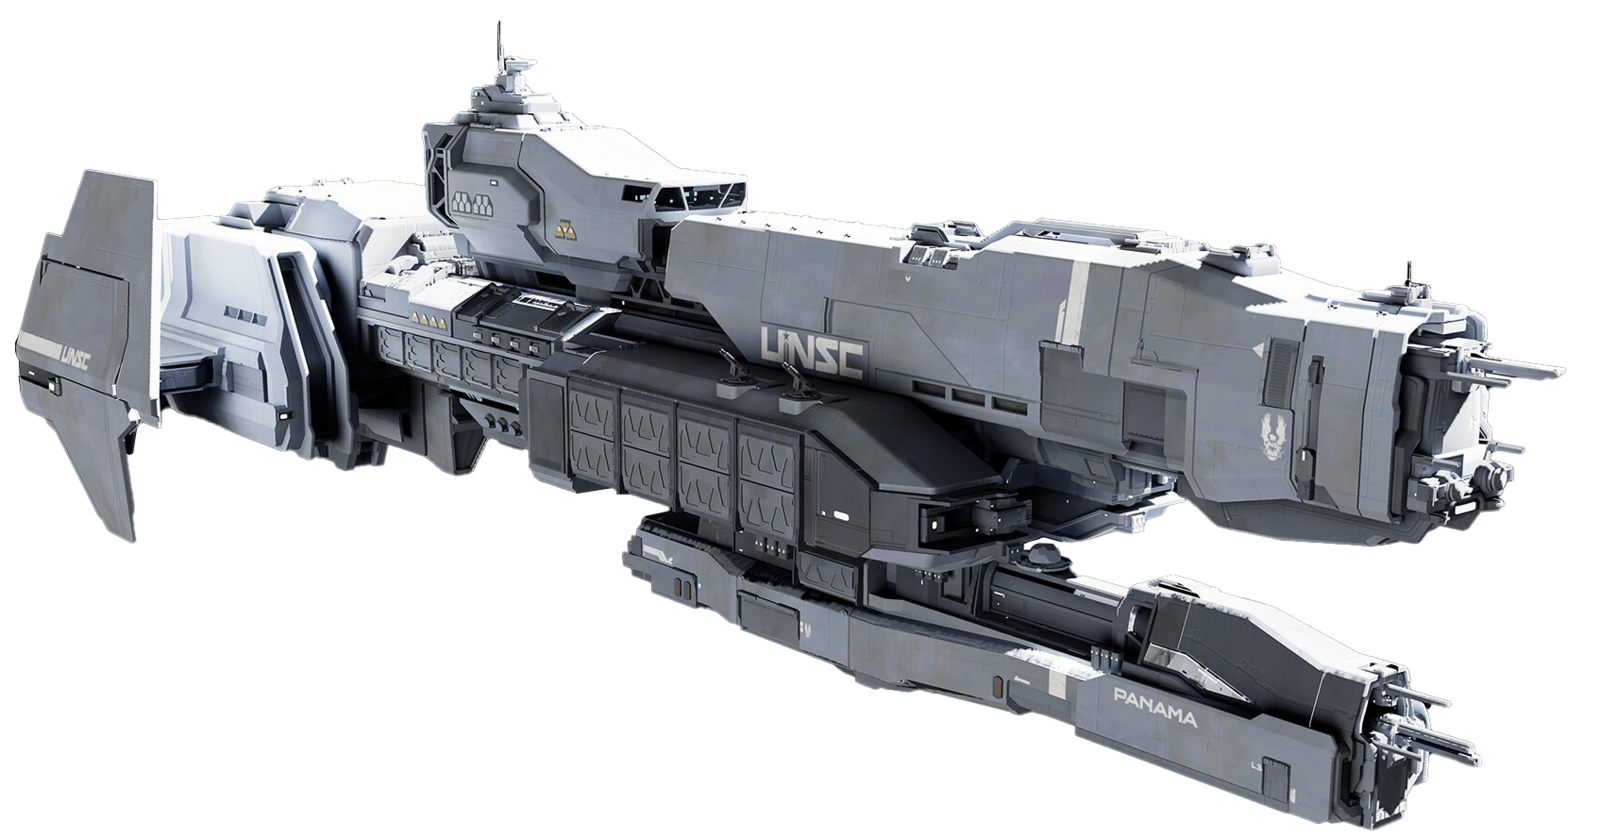 【HALO艦船百科】穆爾桑級輕型護衛艦 —— UNSC新時代星艦的代表作